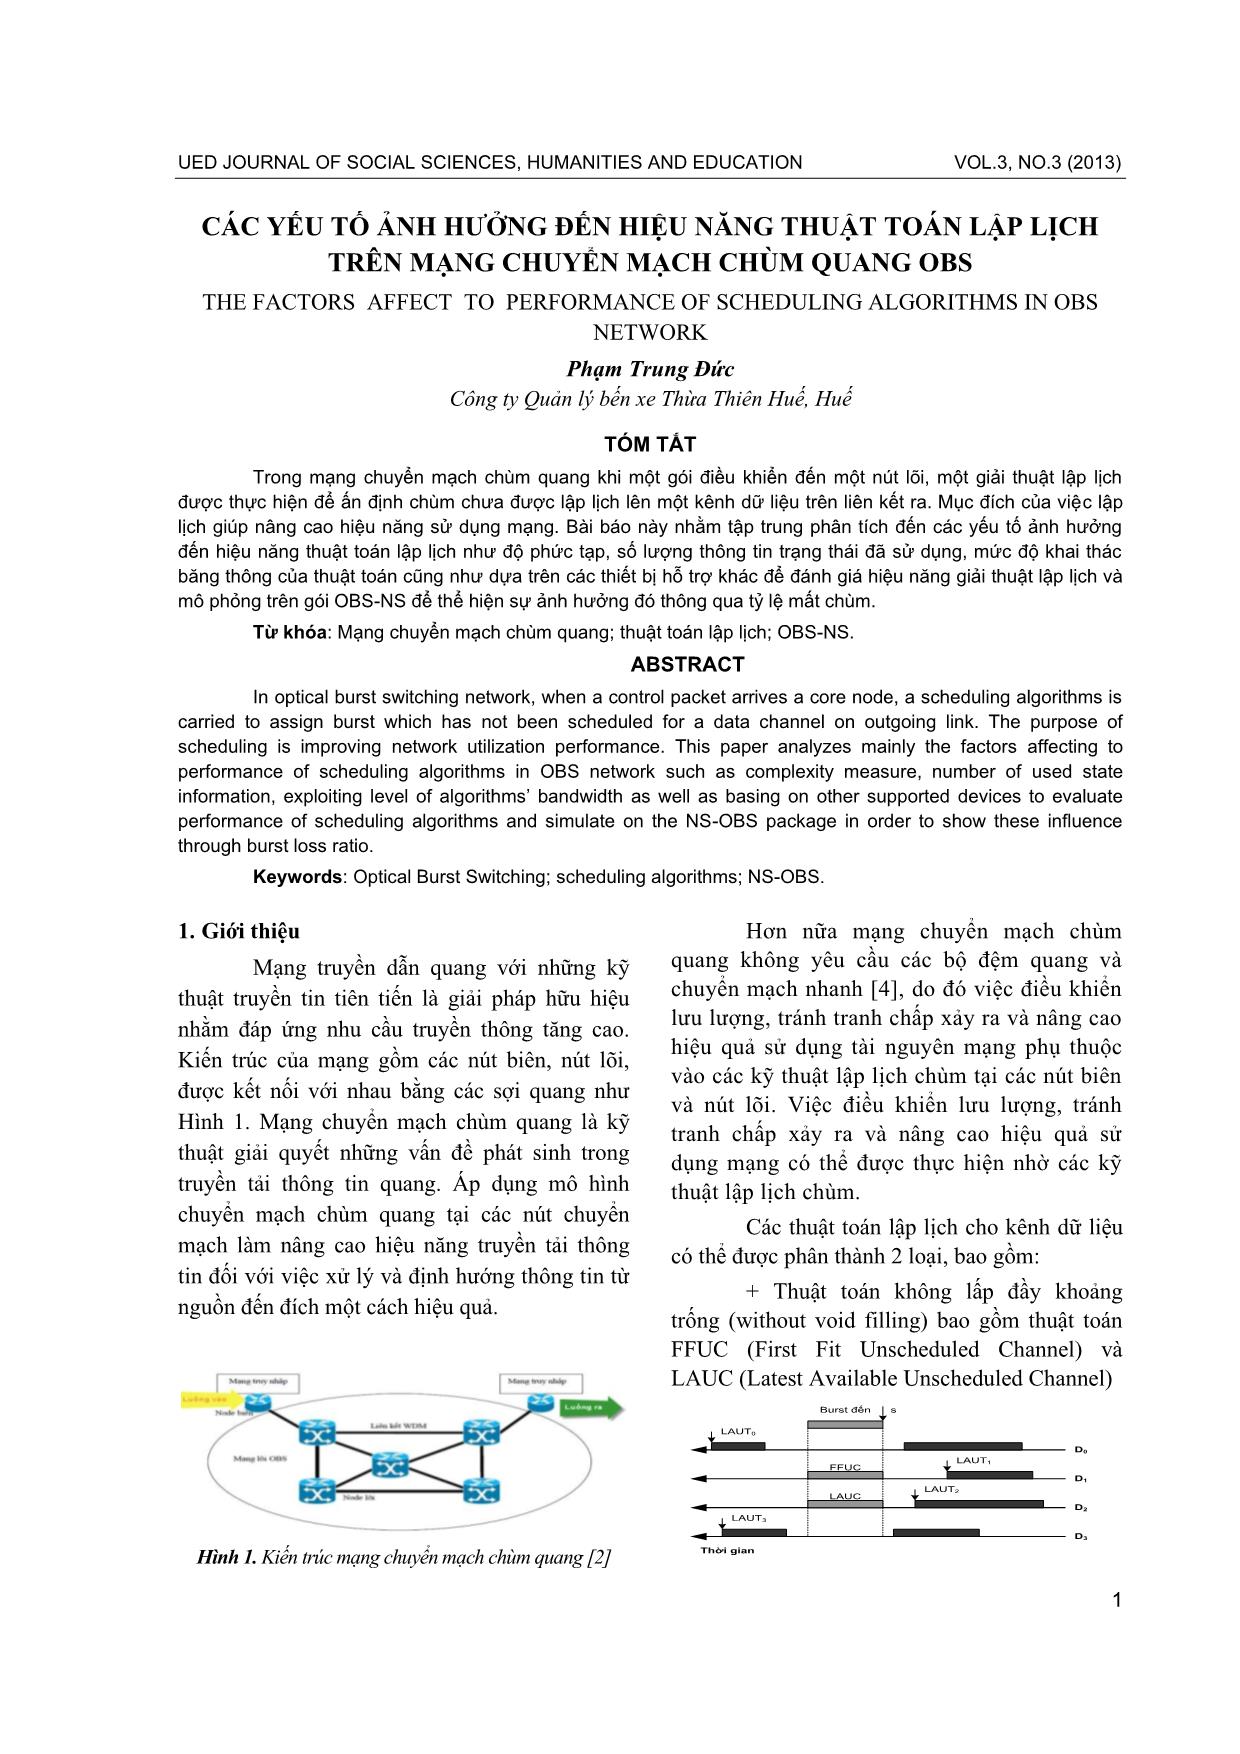 Các yếu tố ảnh hưởng đến hiệu năng thuật toán lập lịch trên mạng chuyển mạch chùm quang OBS trang 1